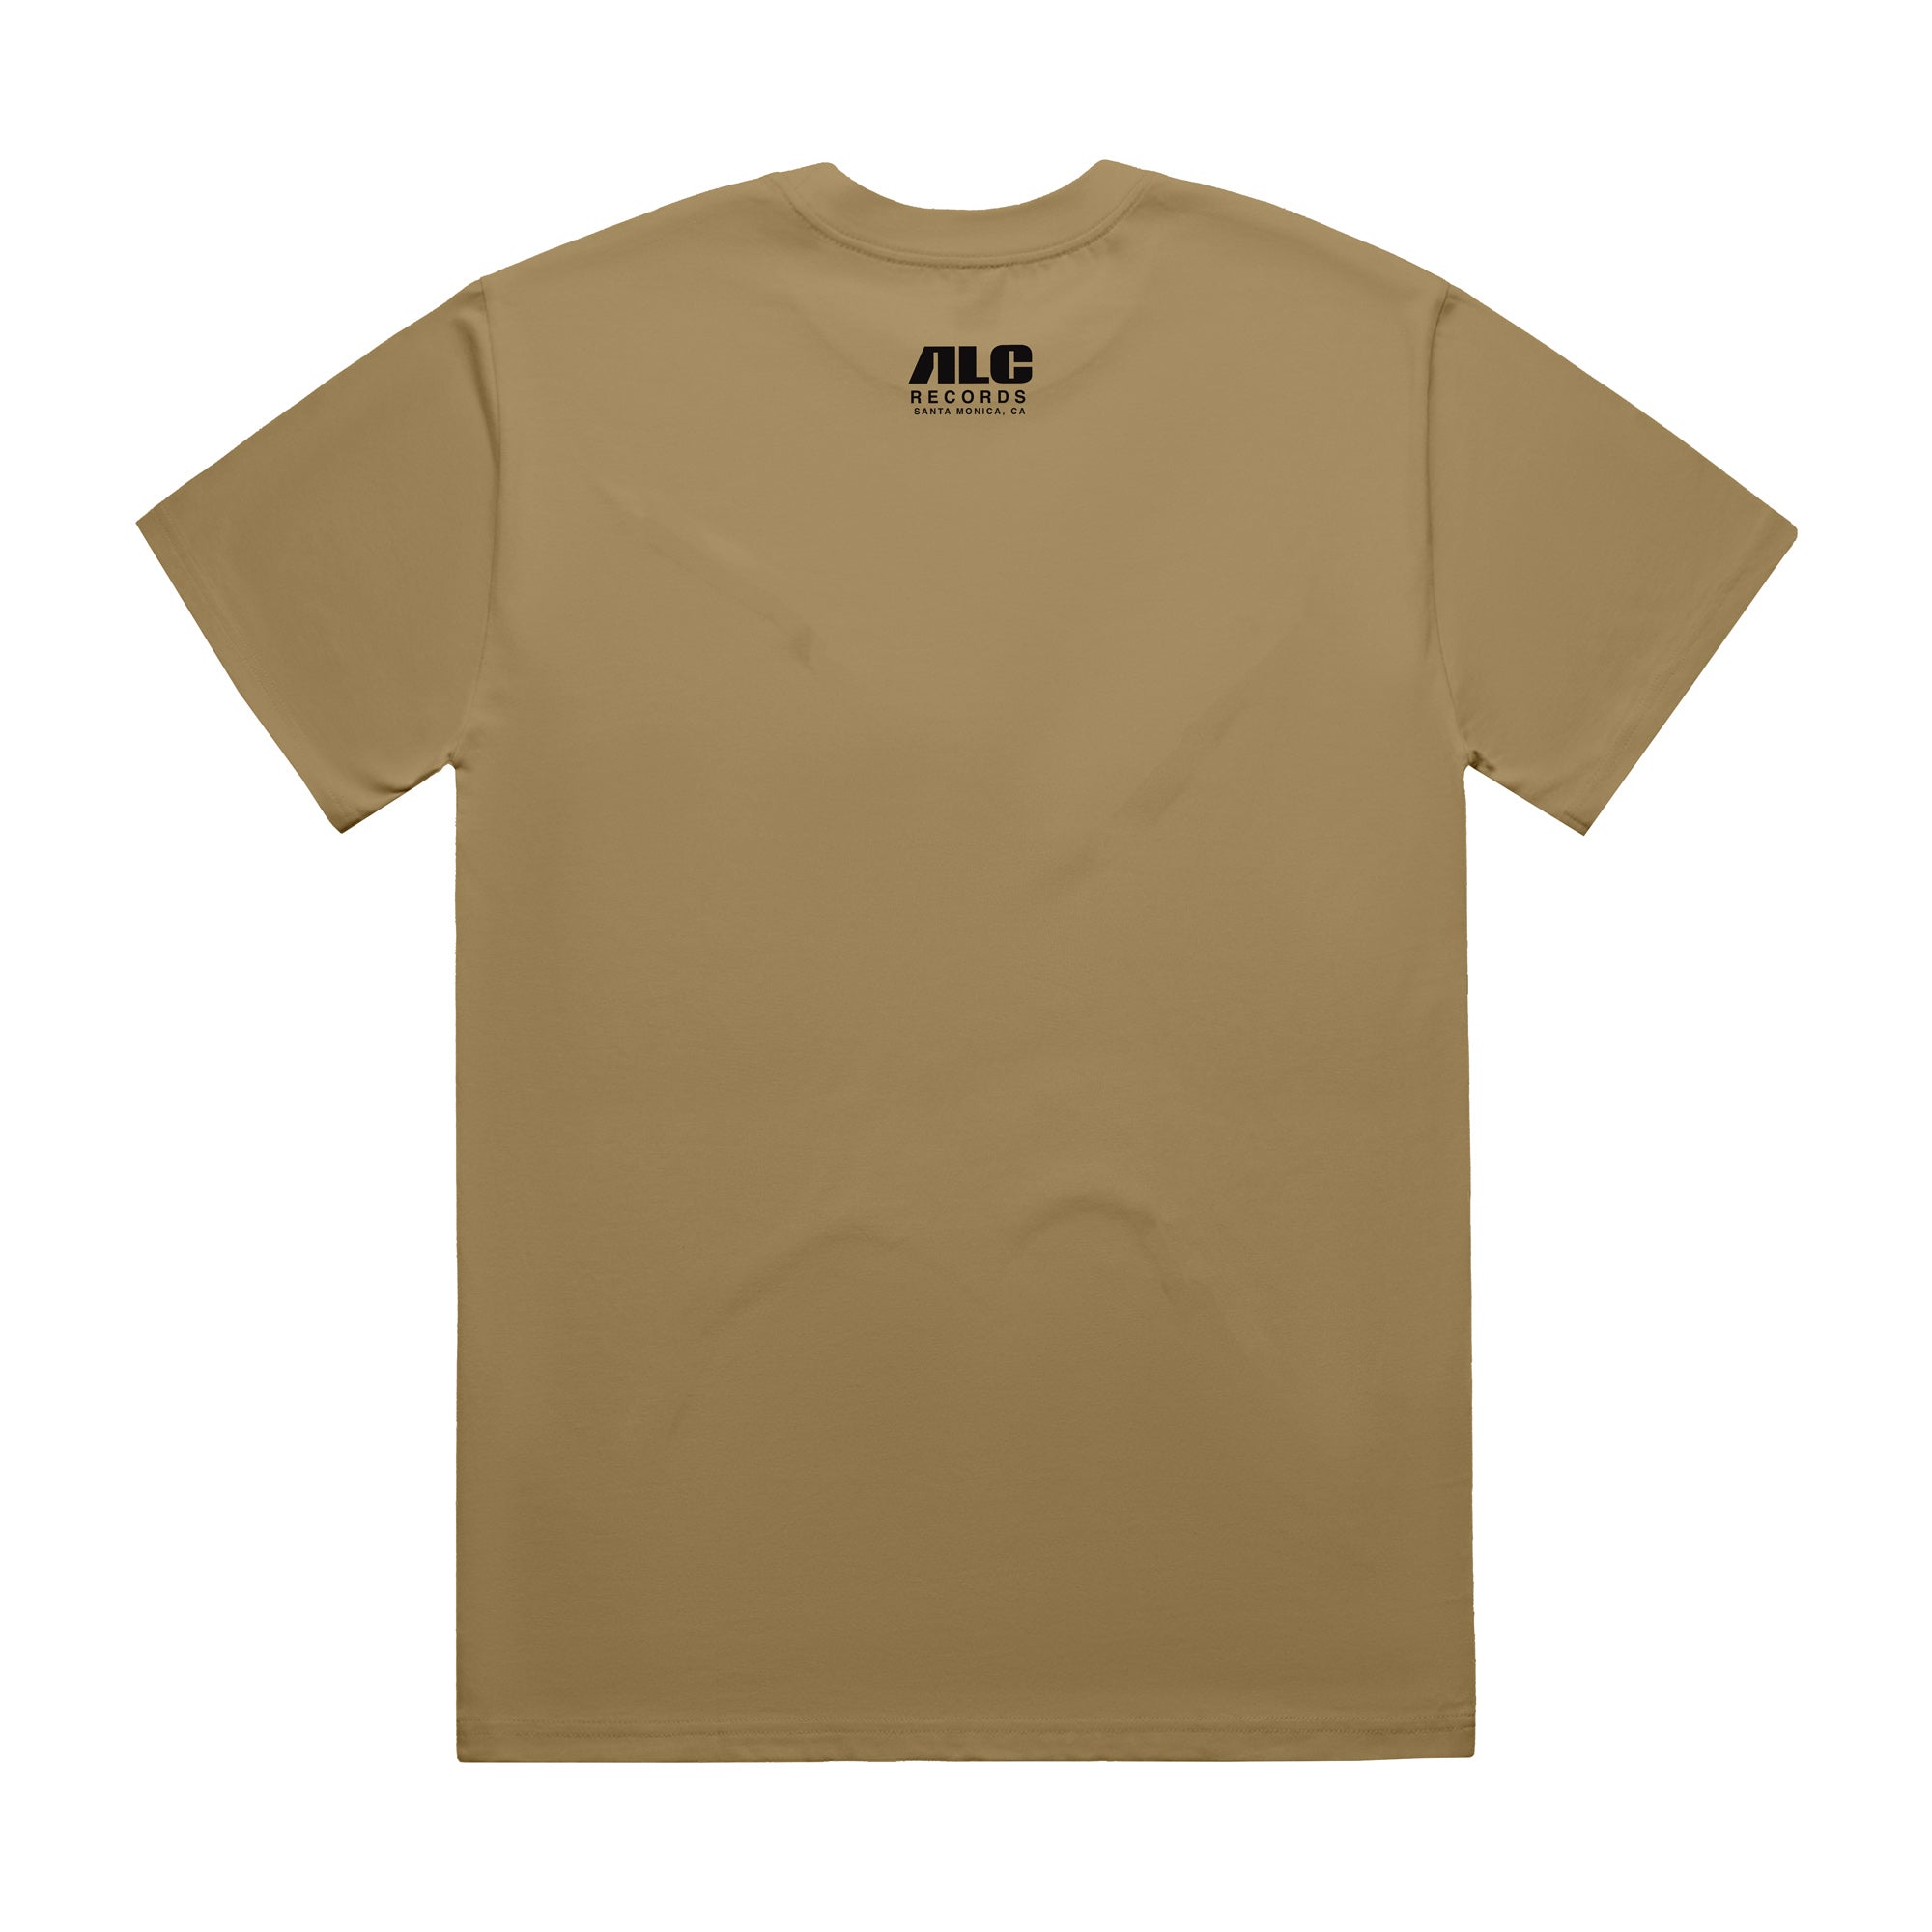 Gangrene's Millions® (Tan Shirt)